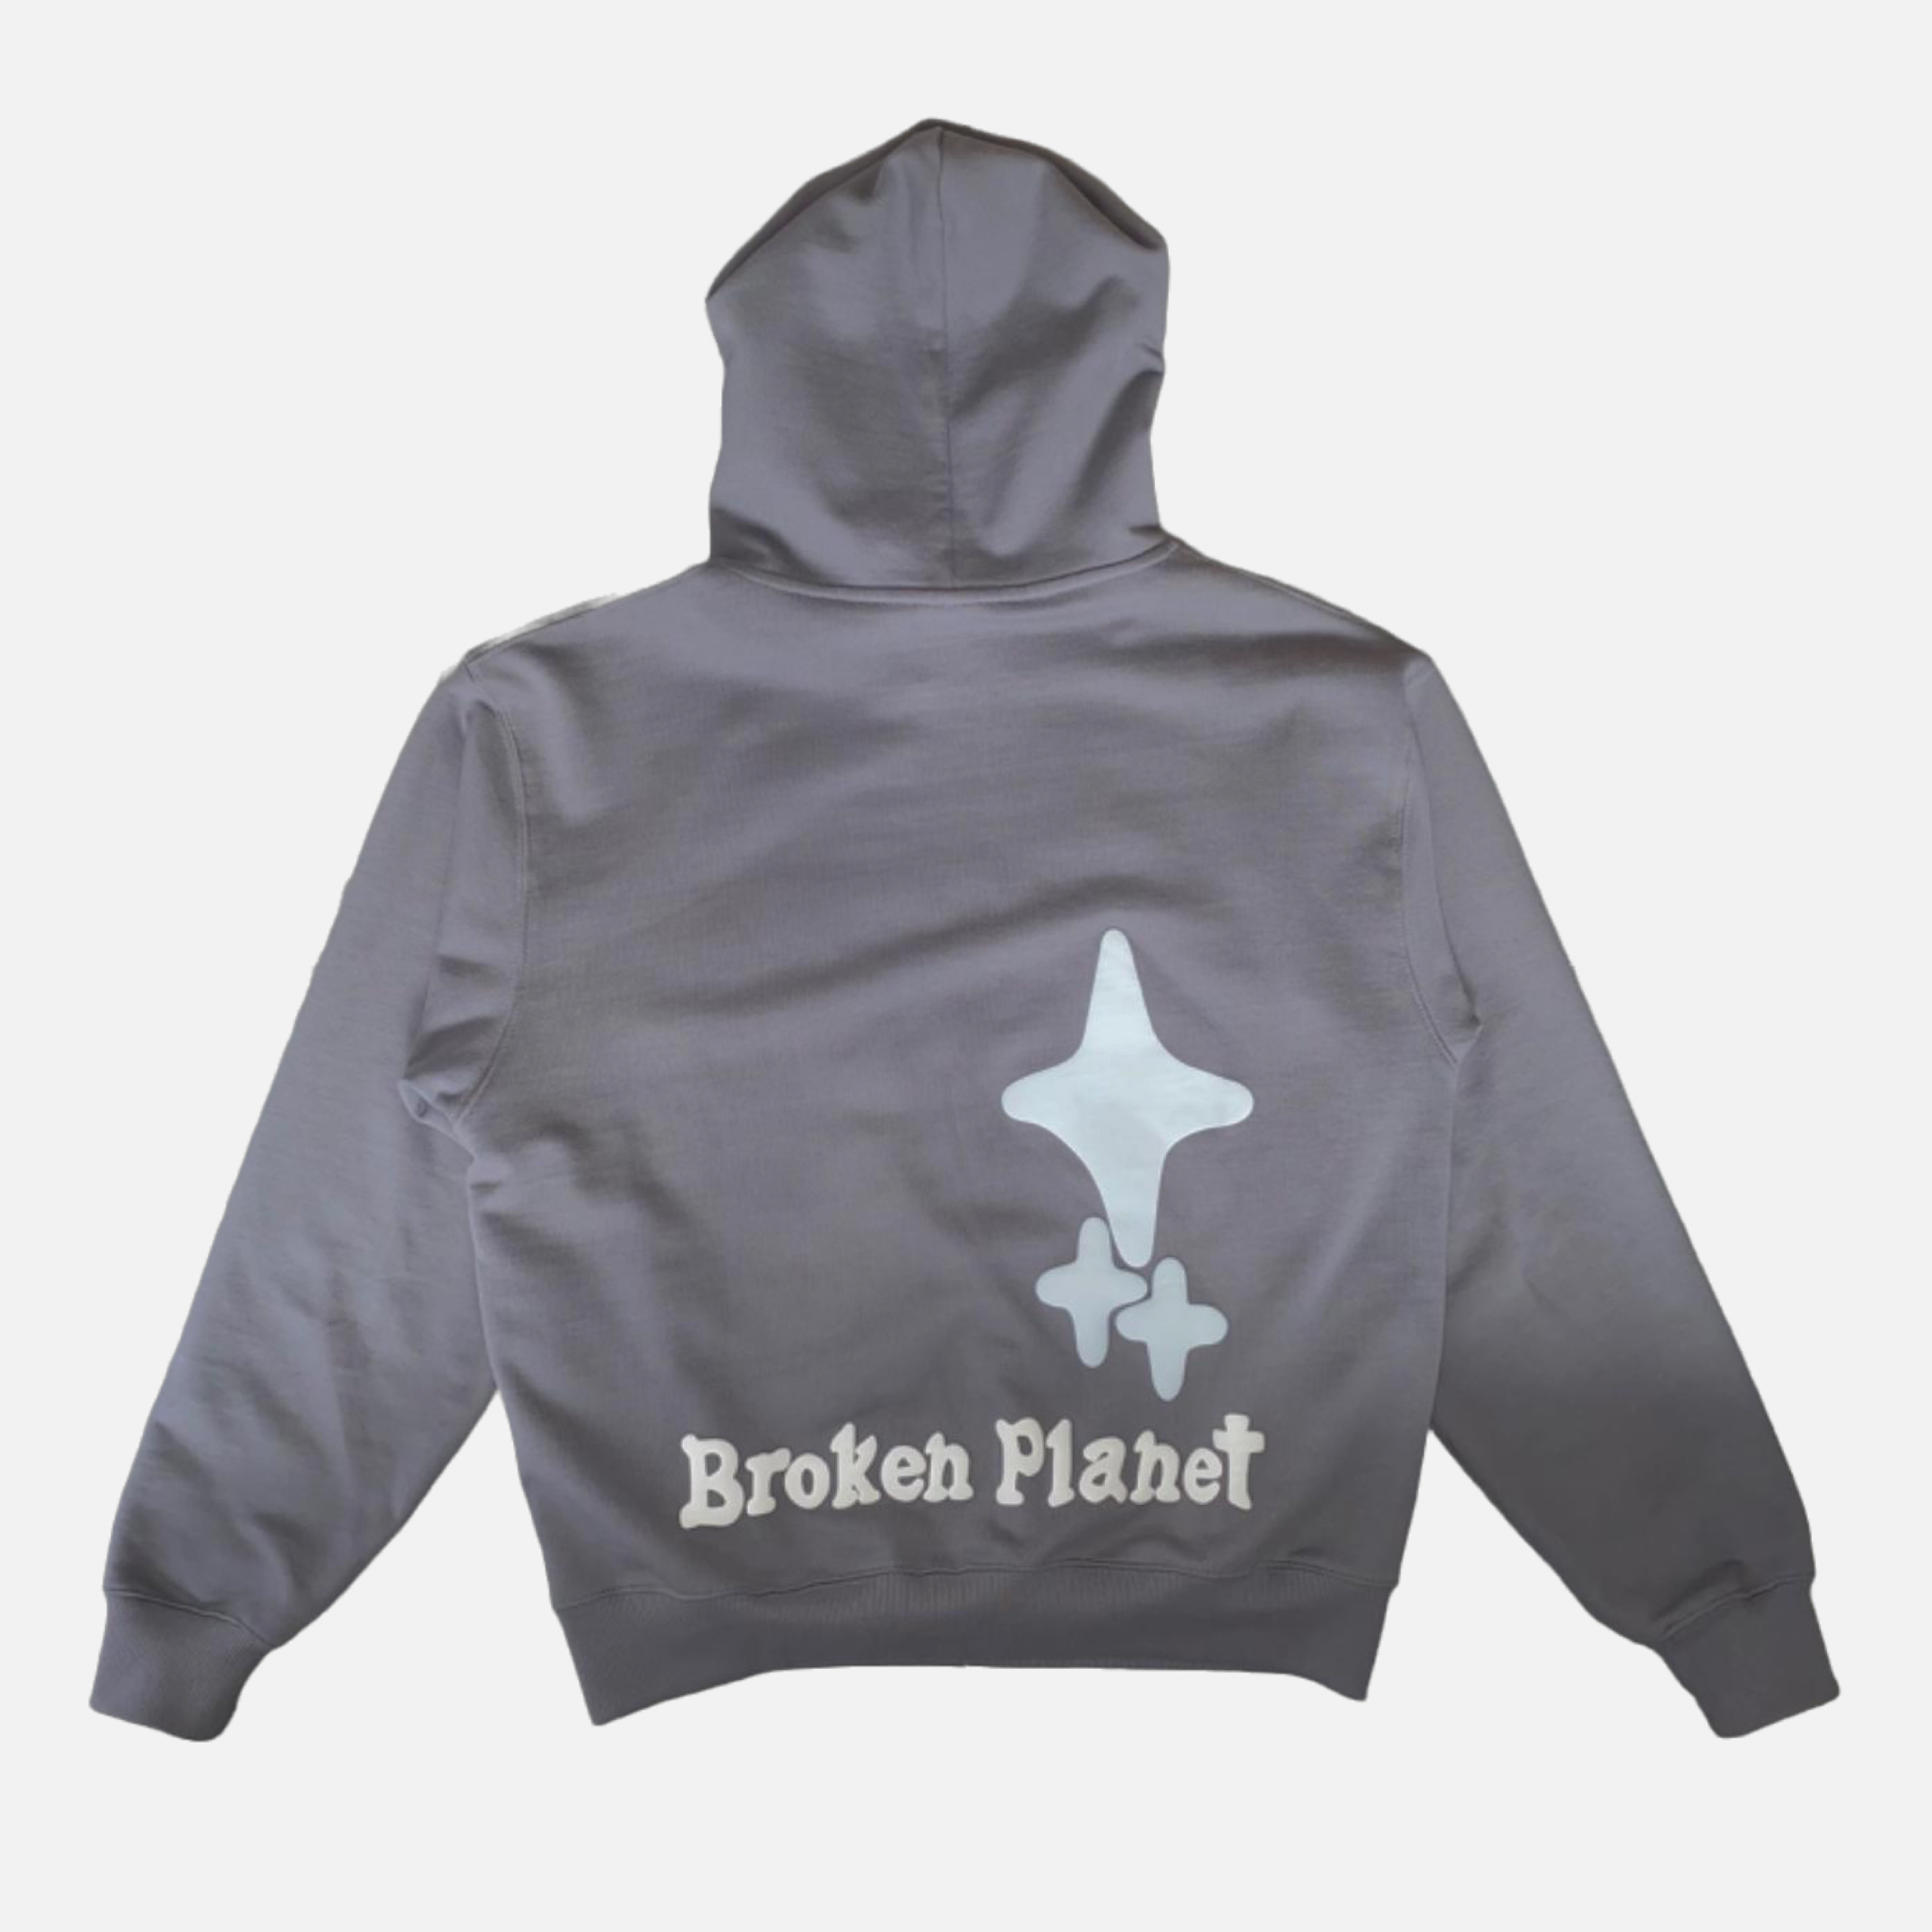 Broken Planet "Trust Your Universe" Hoodie - Ash Grey